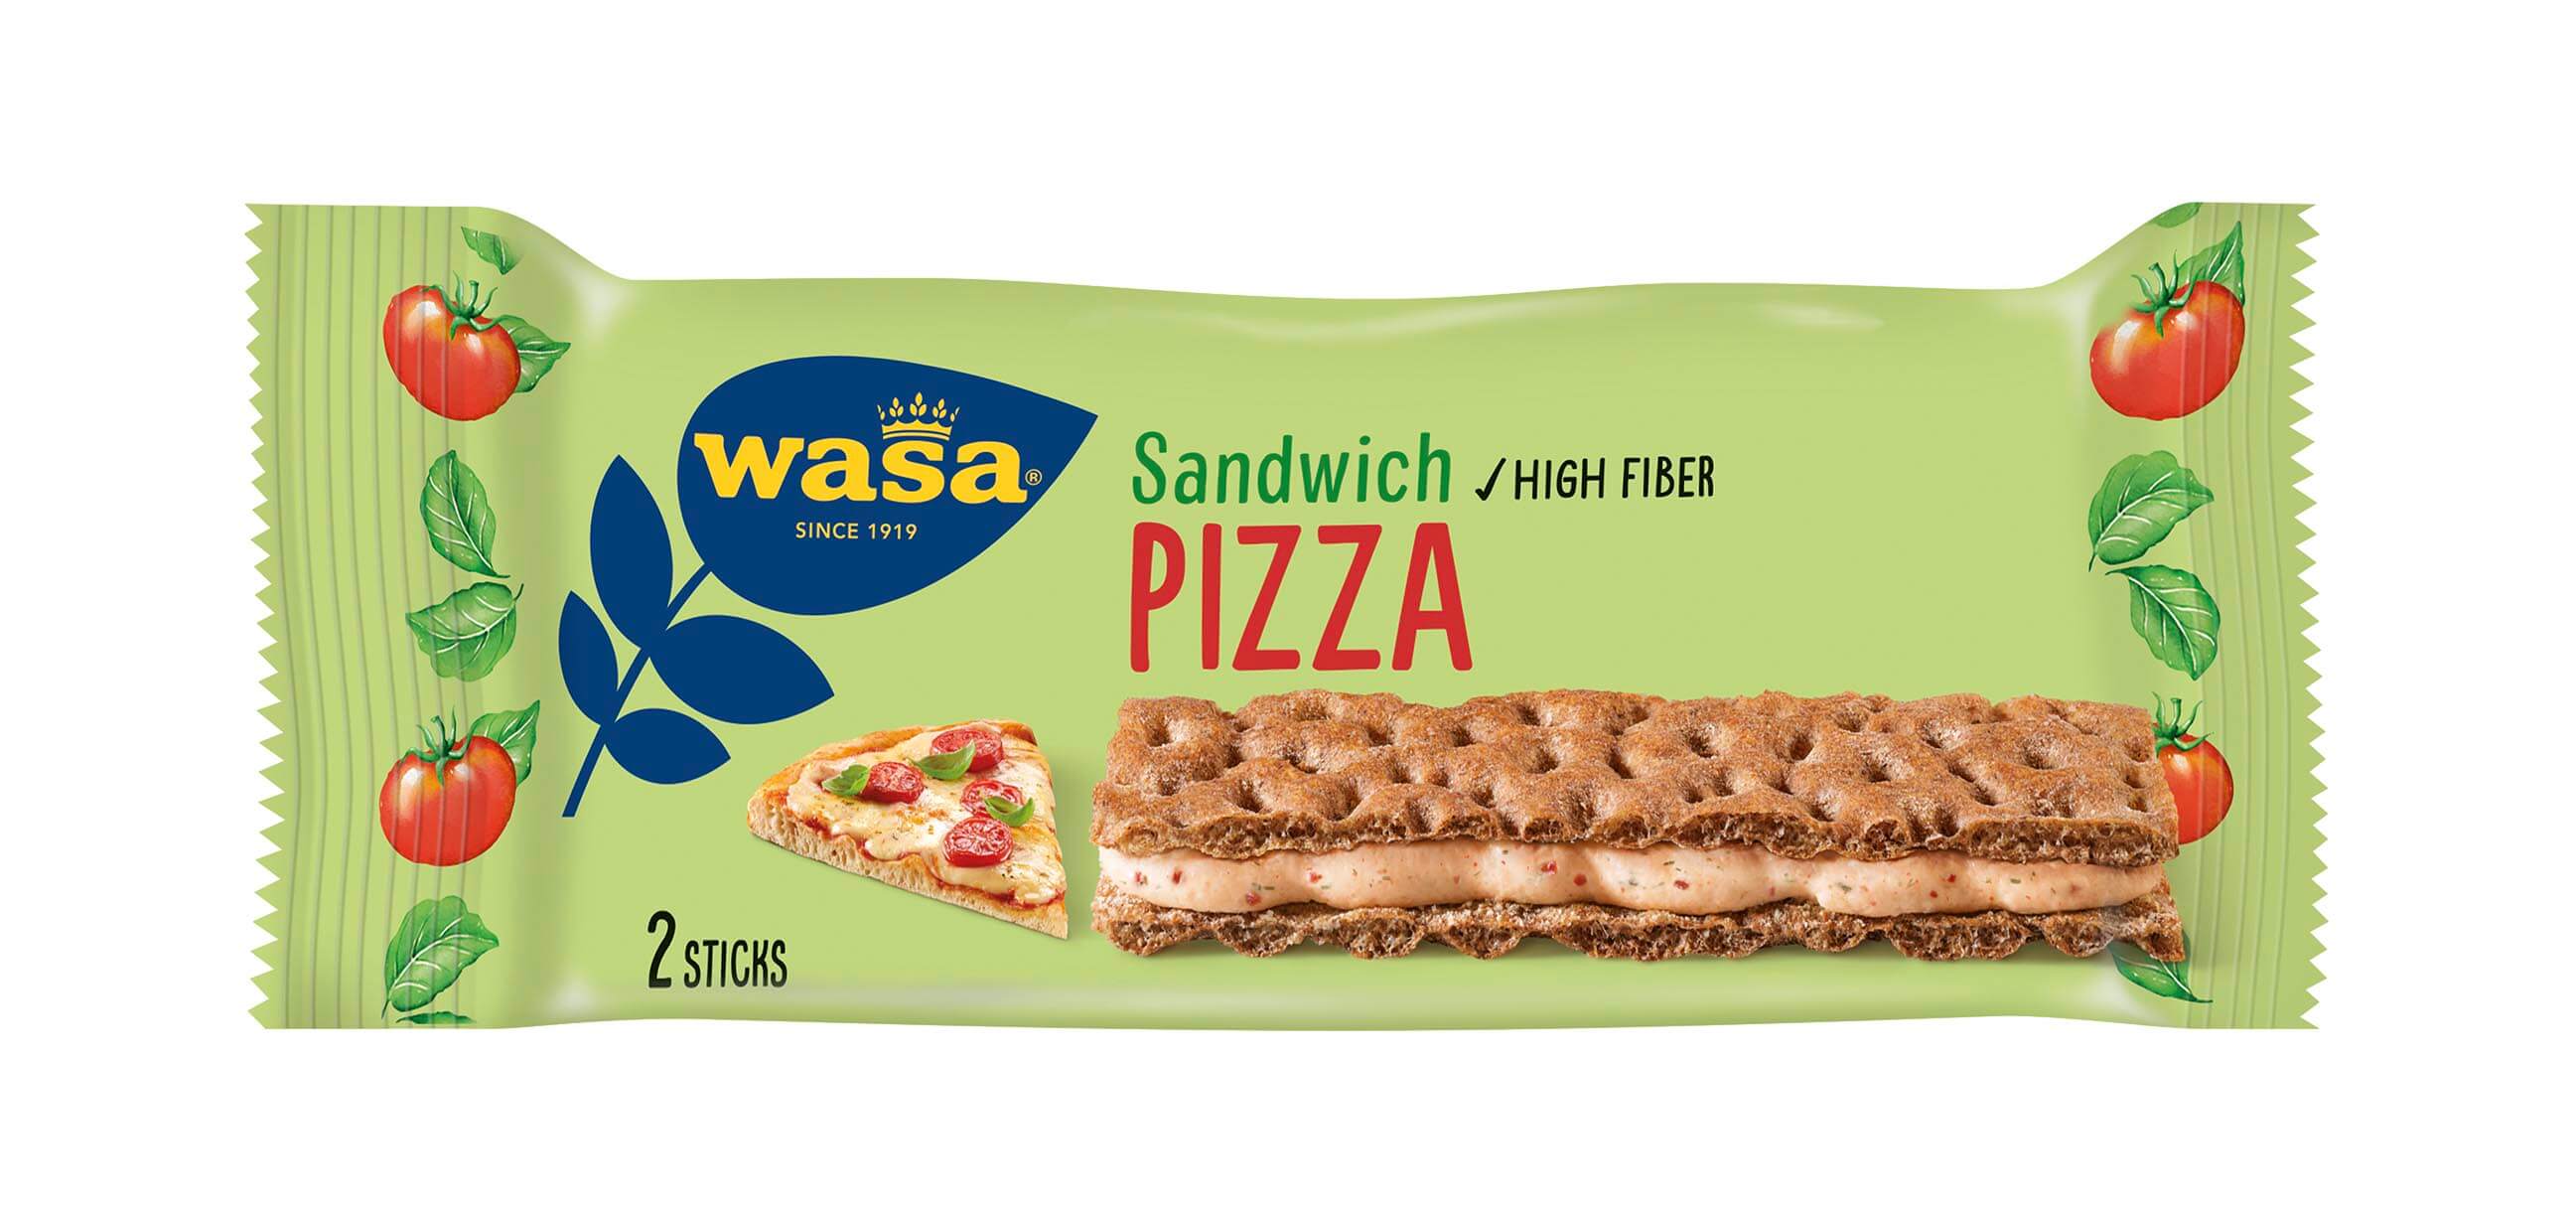 Wasa Sandwich Pizza - Upptäck det perfekta mellanmålet, gott knäckebröd med krämig ostfyllning. Utmärkt som ett lätt mellanmål på språng och som tips på mellis barn, efter skolan eller innan träning.